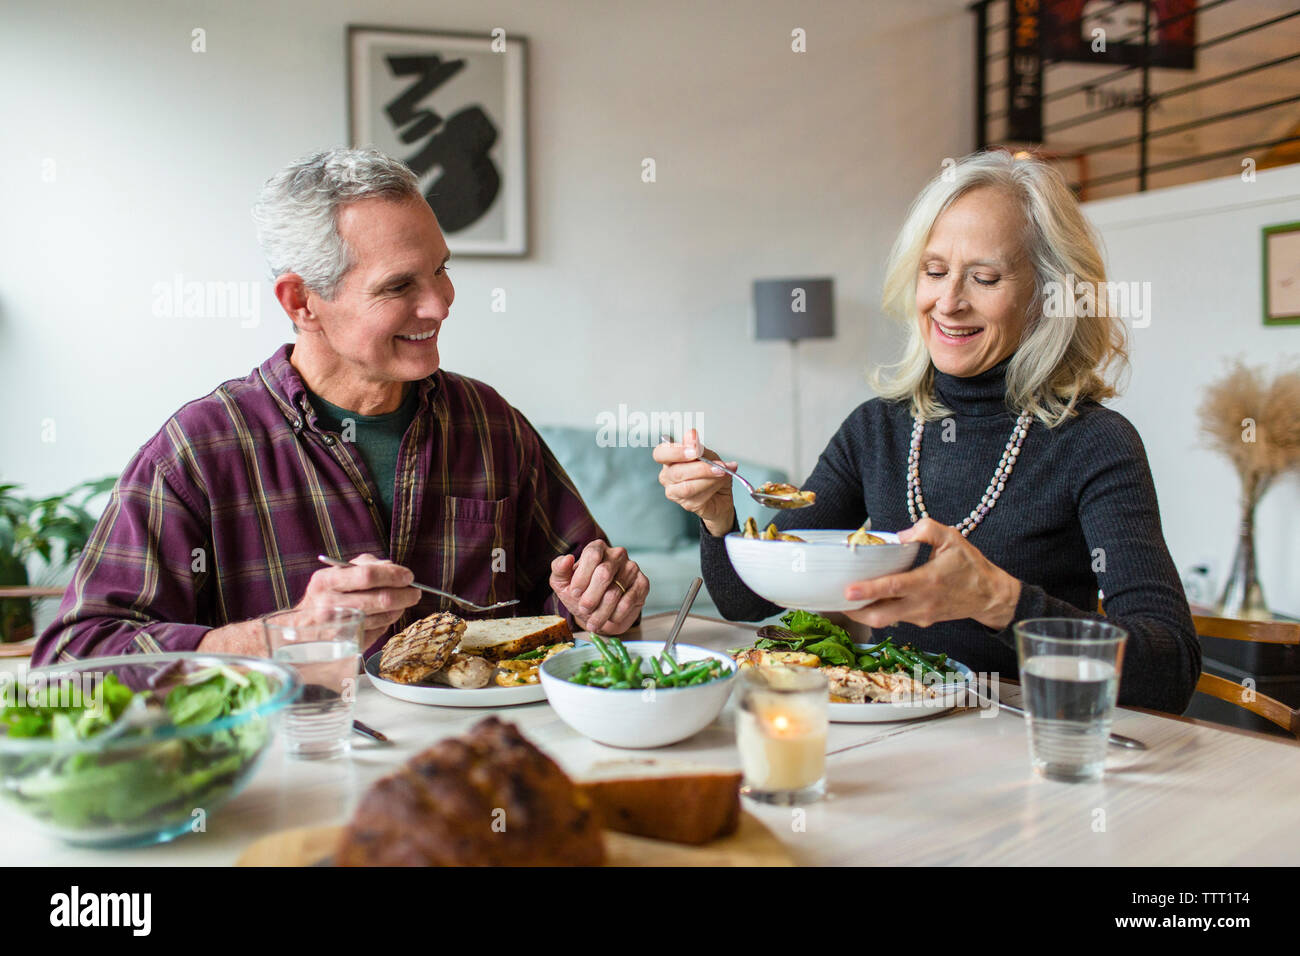 Lächelndes Paar beim Mittagessen in Esstisch Stockfoto